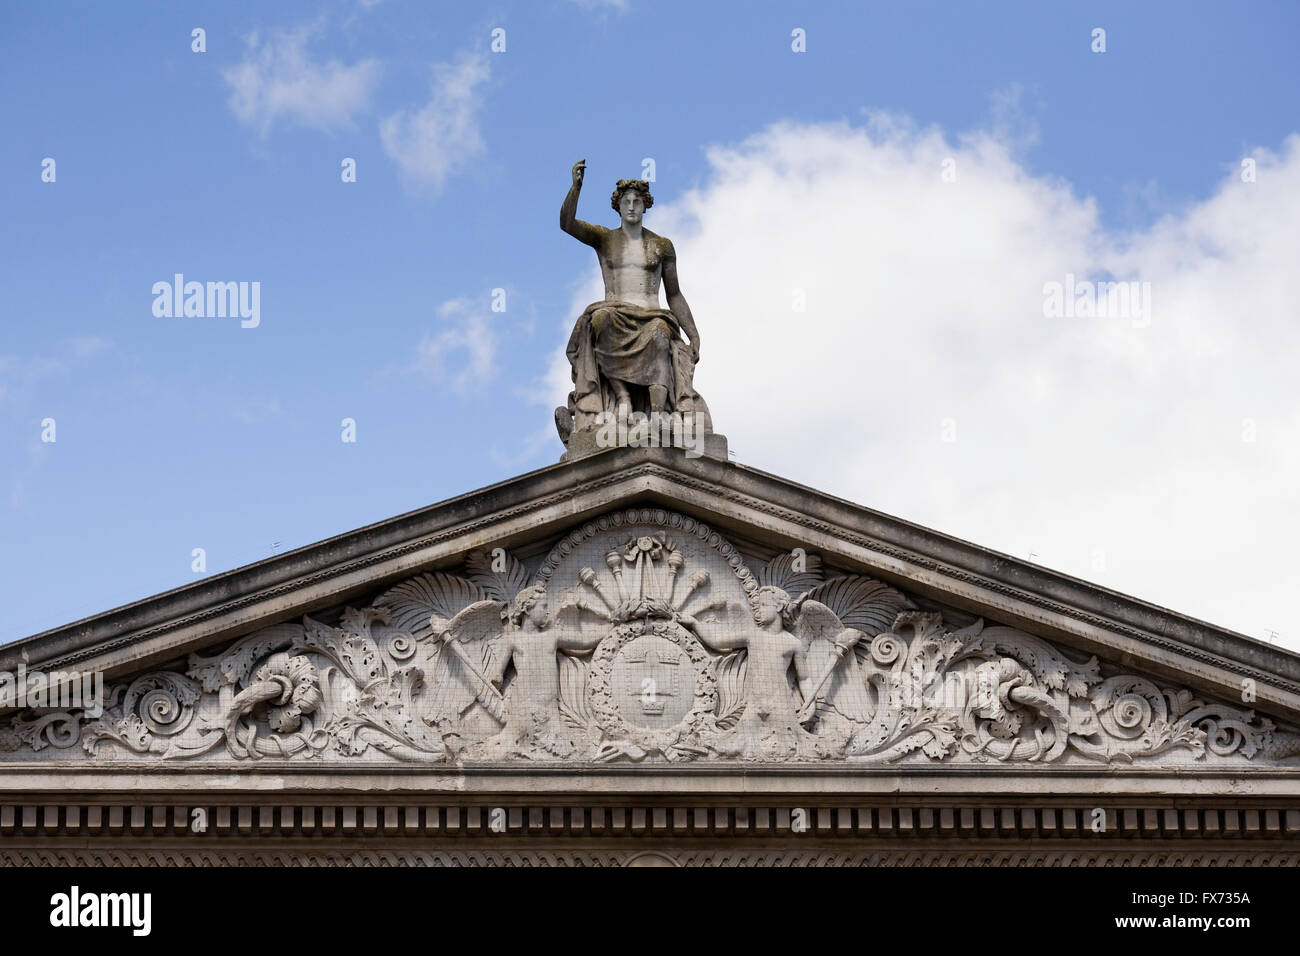 La sculpture sur pierre au-dessus de l'Ashmolean Museum à Oxford. Banque D'Images